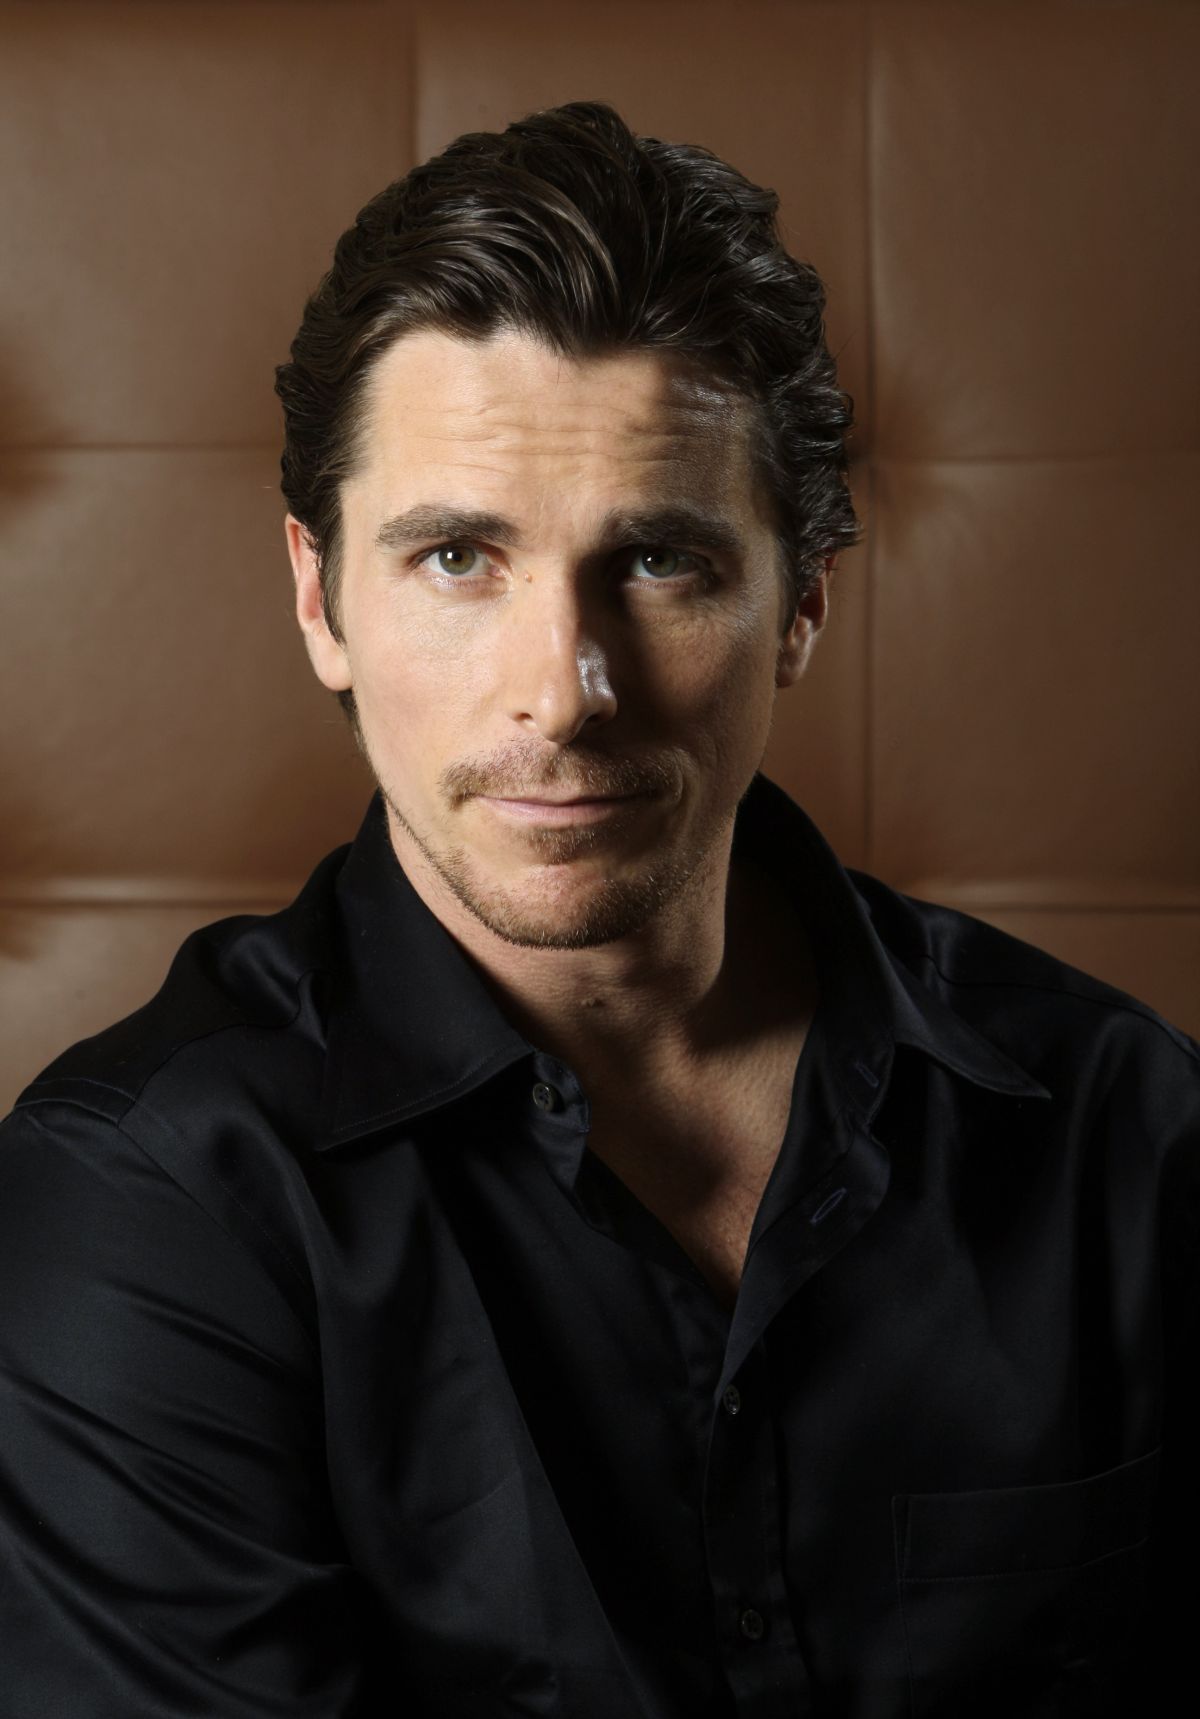 Christian Bale ? mroczny perfekcjonista